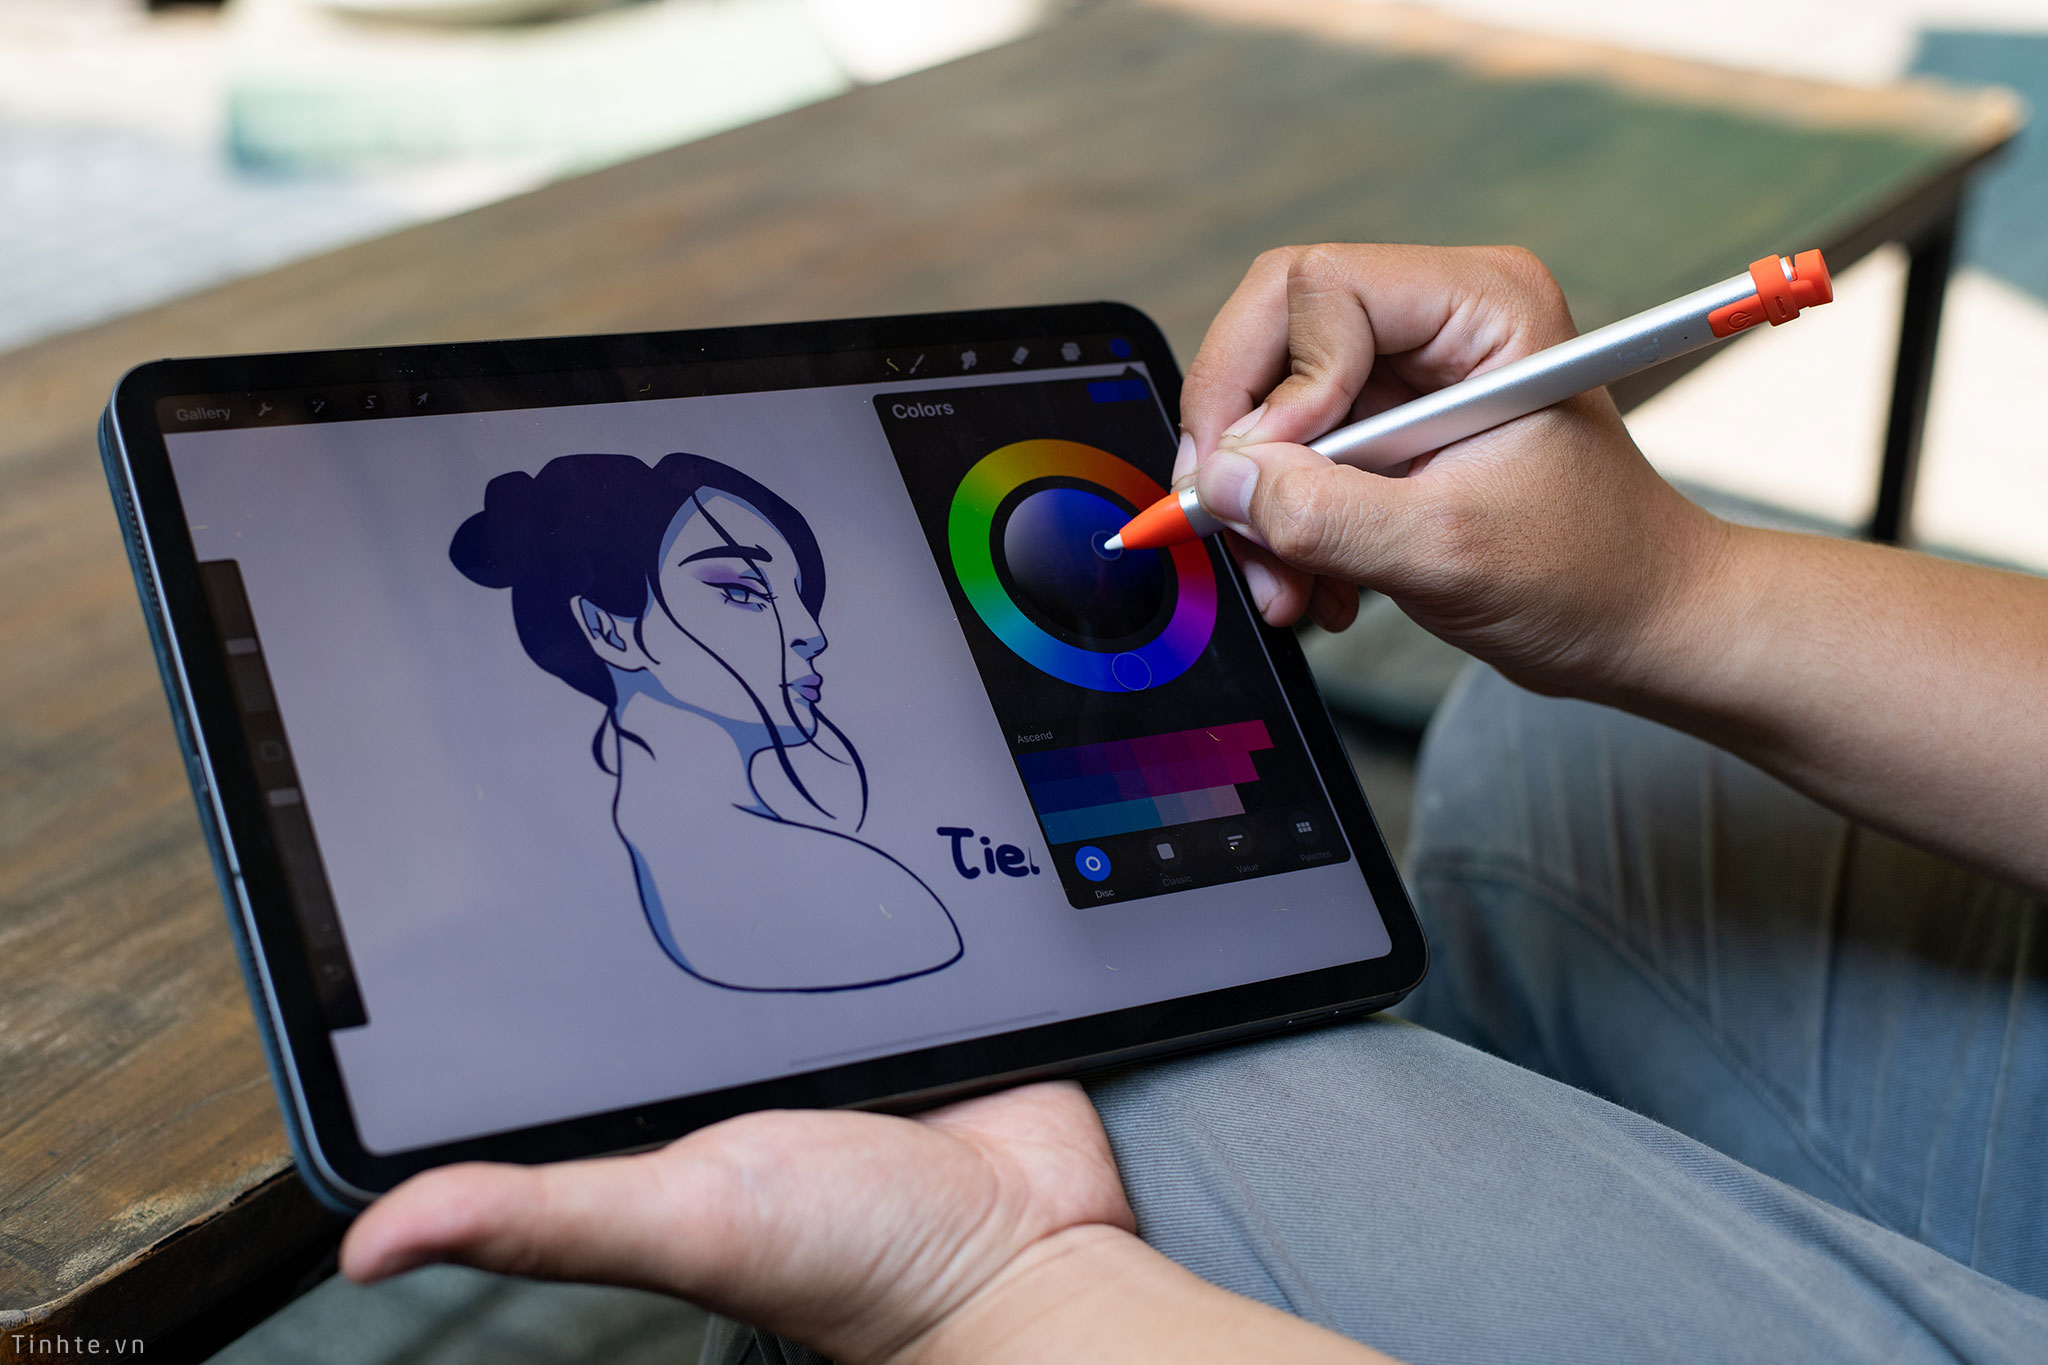 Với bút cảm ứng Logitech Crayon, việc vẽ và mô phỏng hình ảnh trở nên đơn giản và dễ dàng hơn bao giờ hết. Nhờ vào độ nhạy cảm và thiết kế thông minh, bạn có thể tạo ra những tác phẩm nghệ thuật tuyệt đẹp trên iPad chỉ trong vài phút.